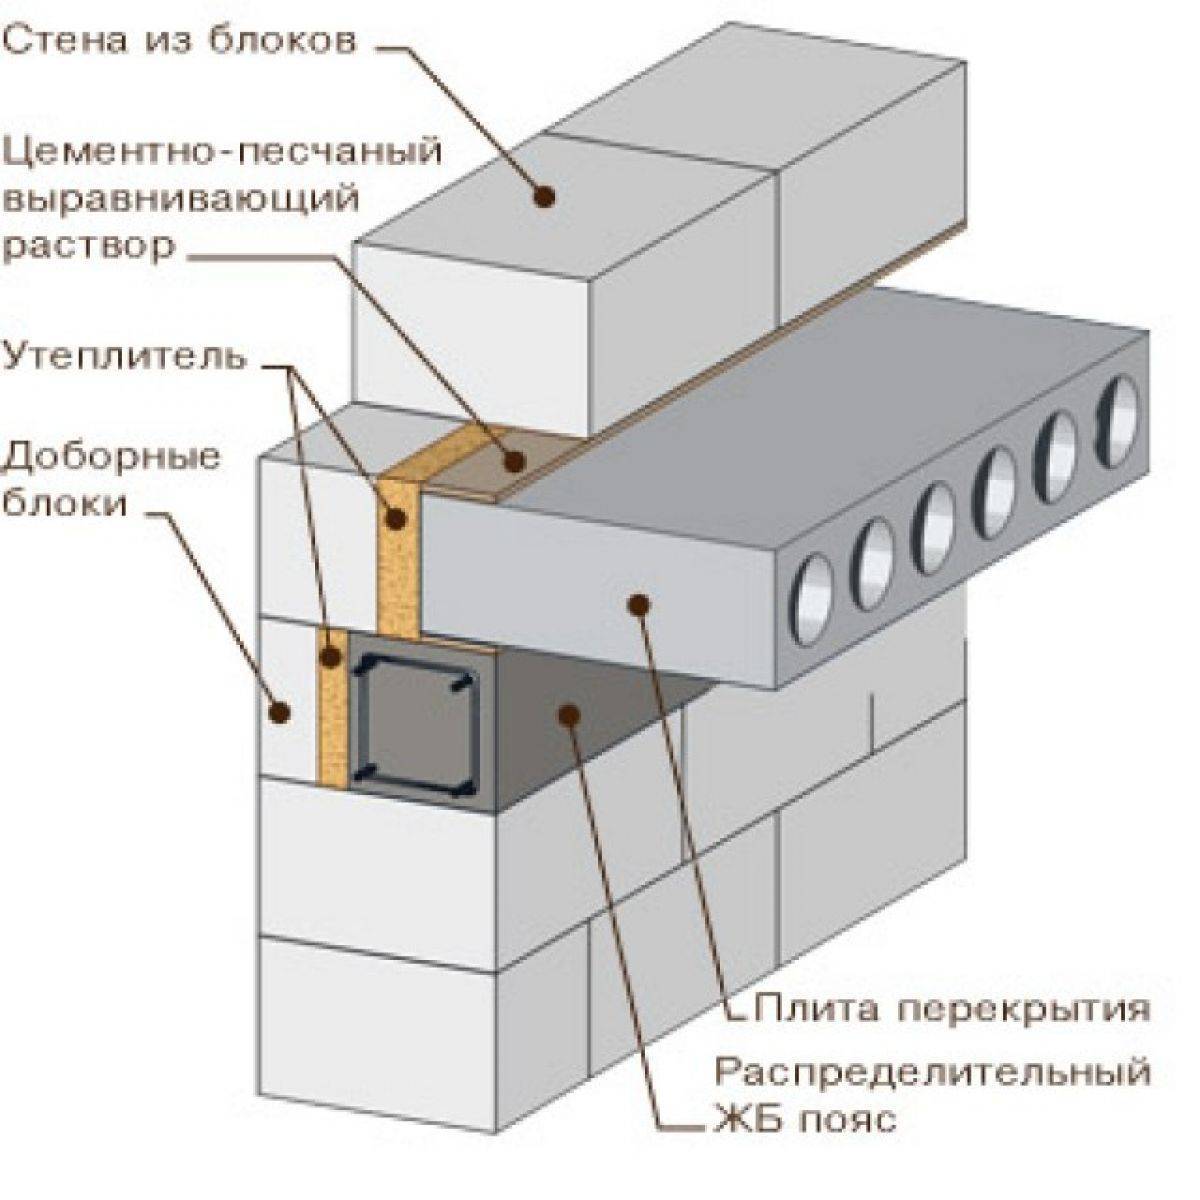 Укладка плит перекрытия на фундамент: опирание, как положить на ленточное основание